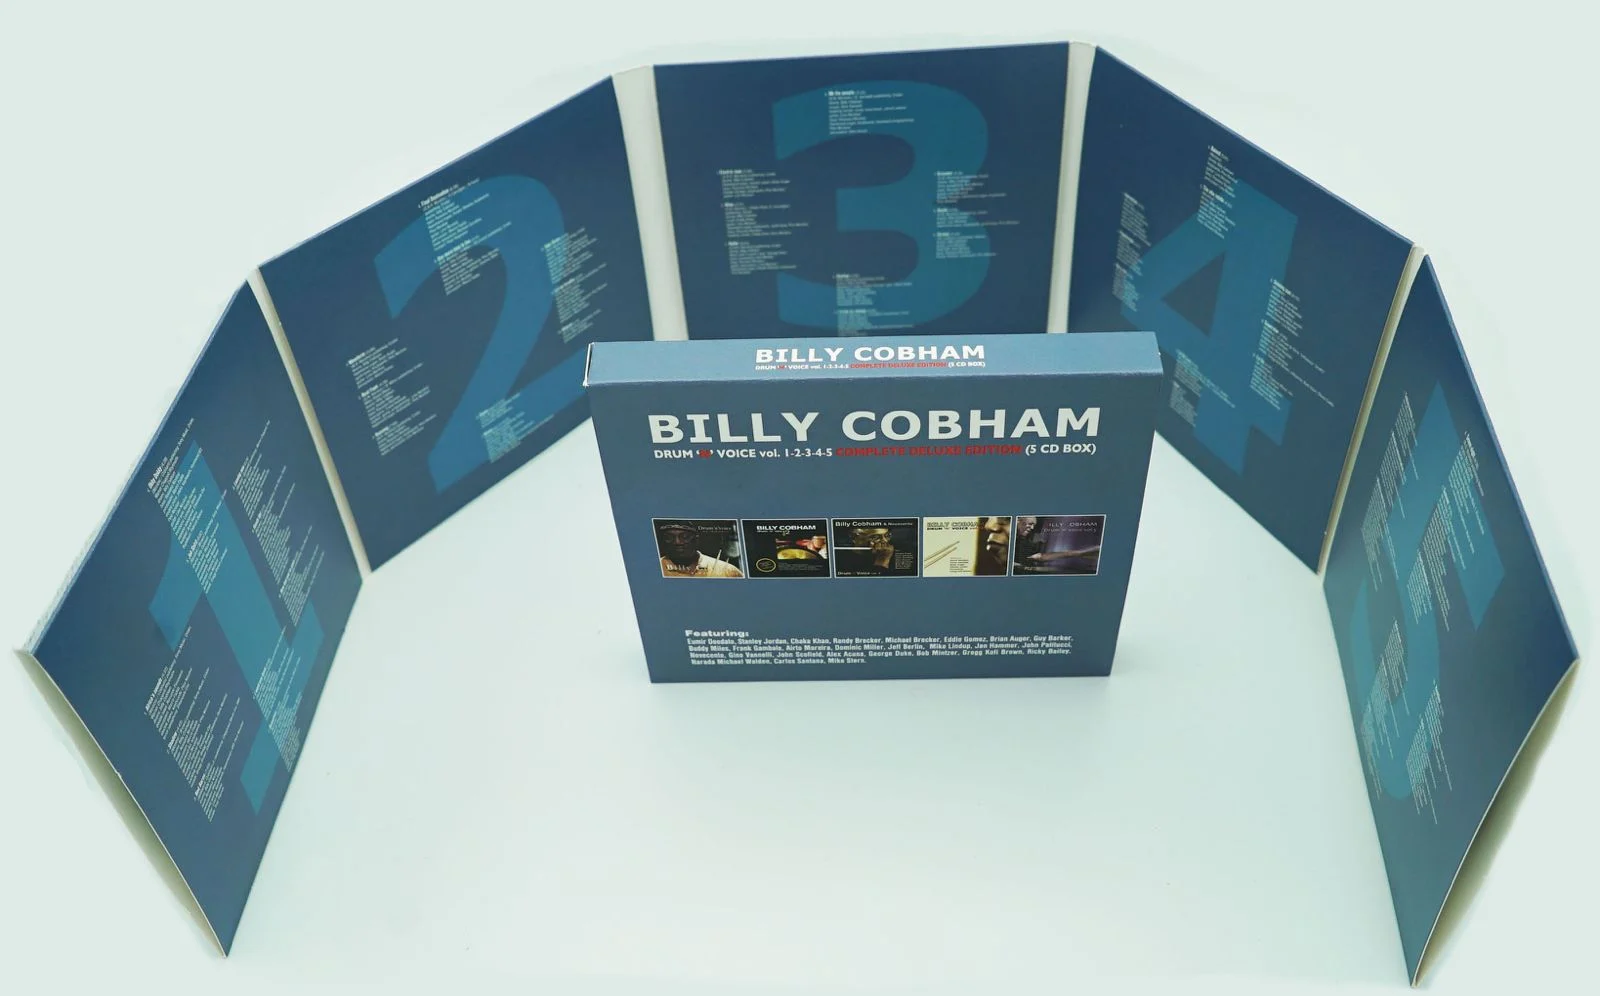 BILLY COBHAM esce il 10 maggio con “DRUM ‘N’ VOICE VOL 1 2 3 4 5: COMPLETE DELUXE EDITION 5CD”